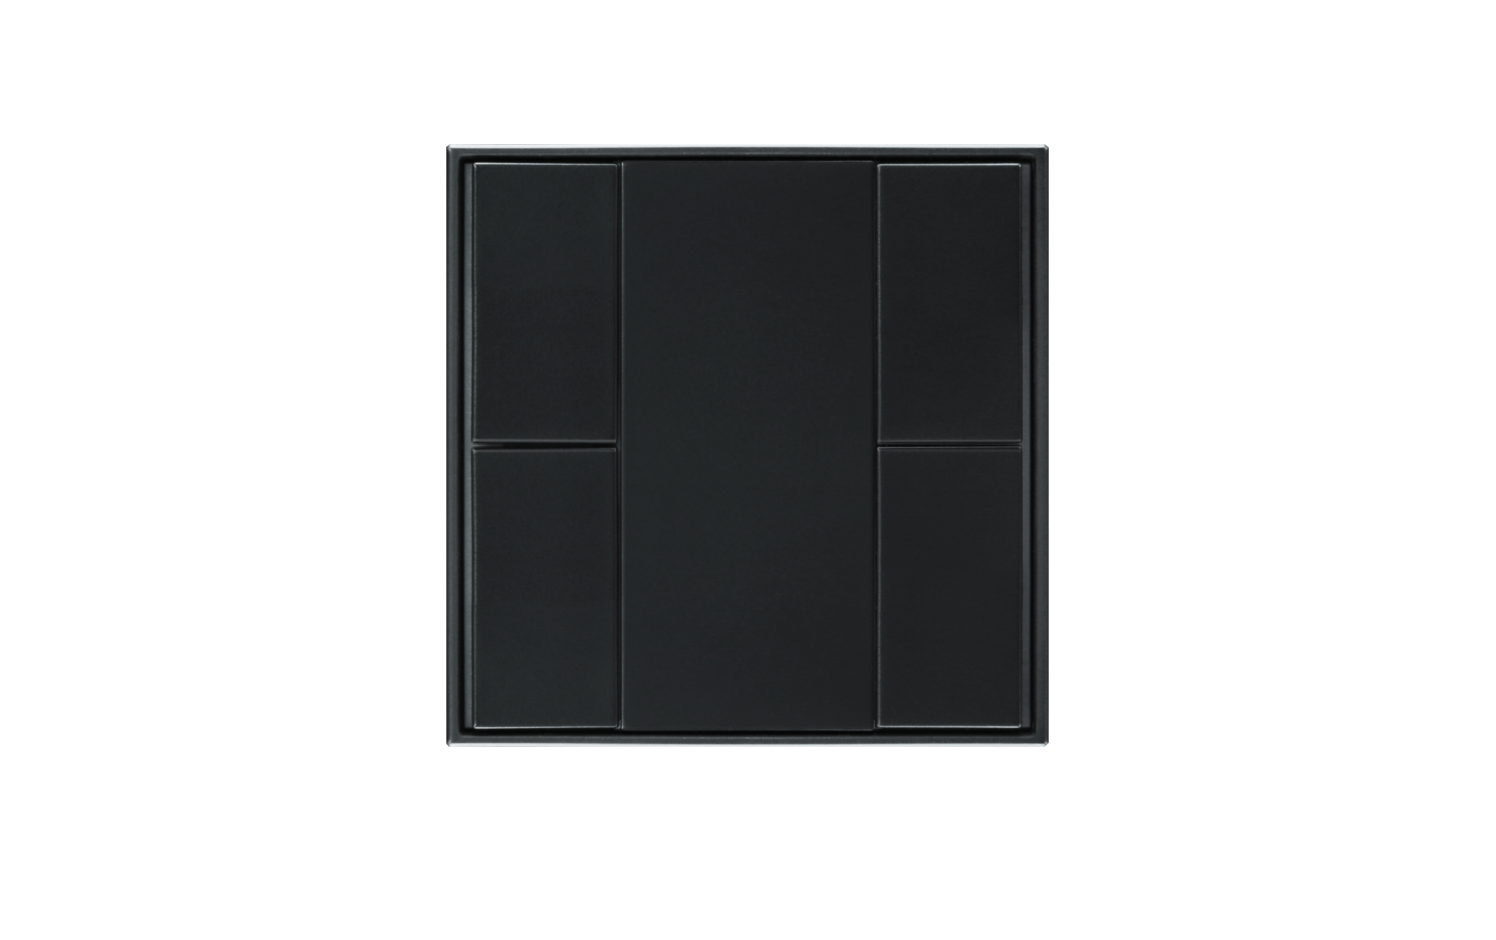 Model B DALI-2 Switch - 4 Button Black Plastic